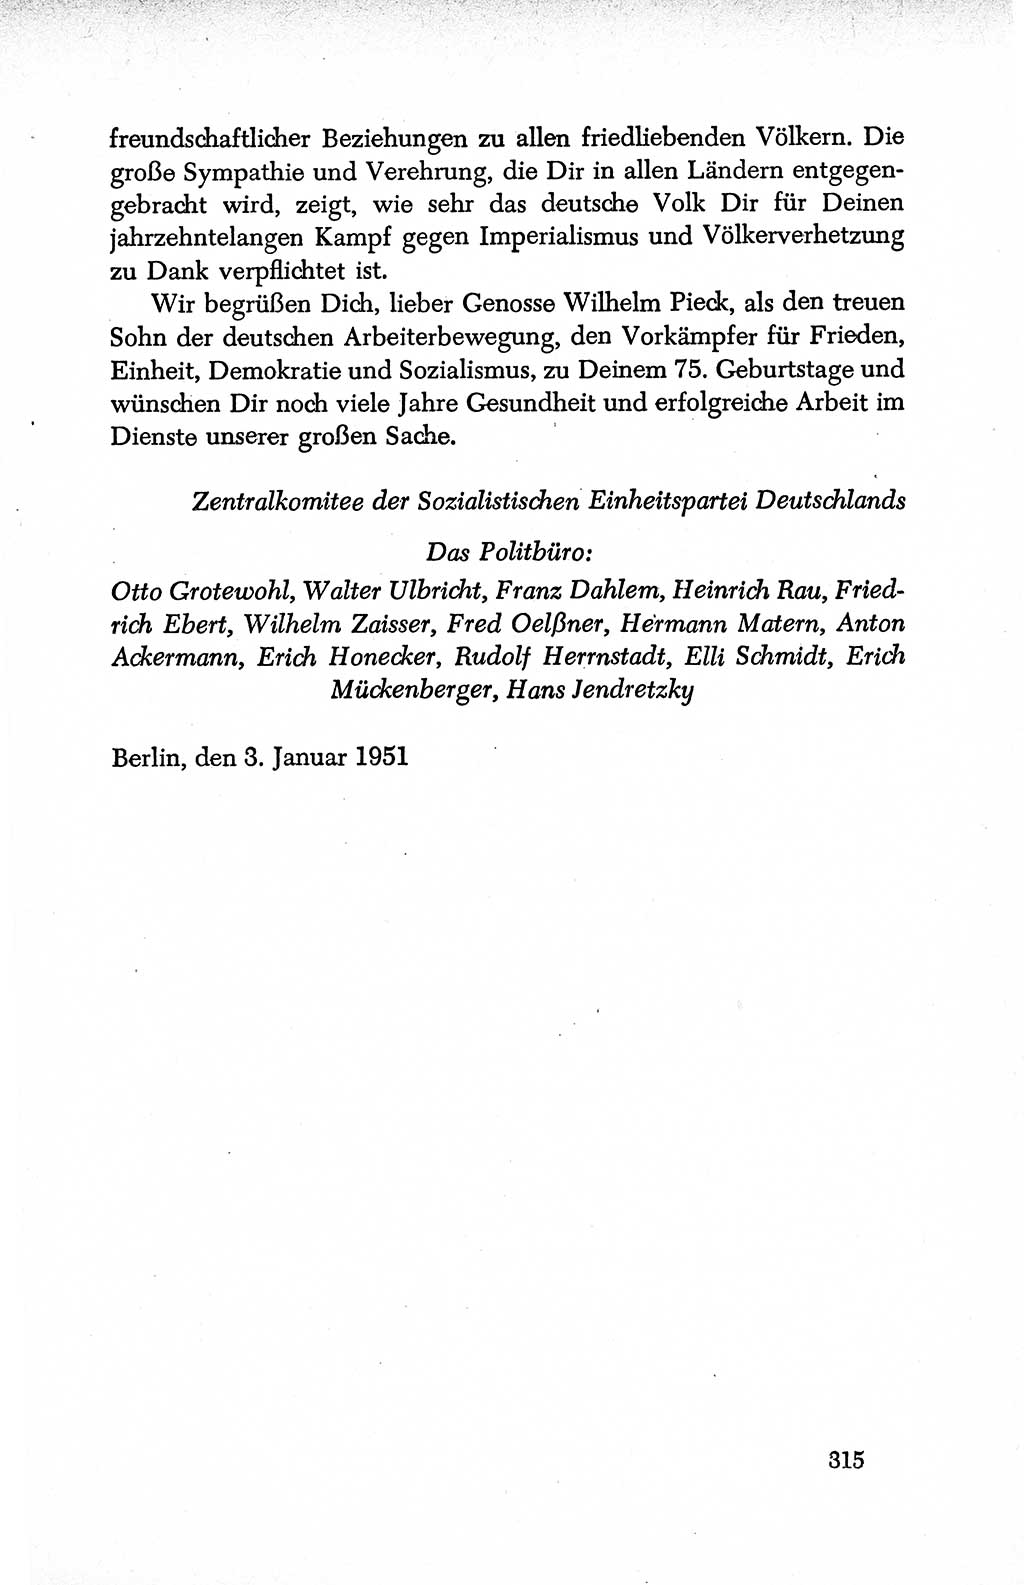 Dokumente der Sozialistischen Einheitspartei Deutschlands (SED) [Deutsche Demokratische Republik (DDR)] 1950-1952, Seite 315 (Dok. SED DDR 1950-1952, S. 315)